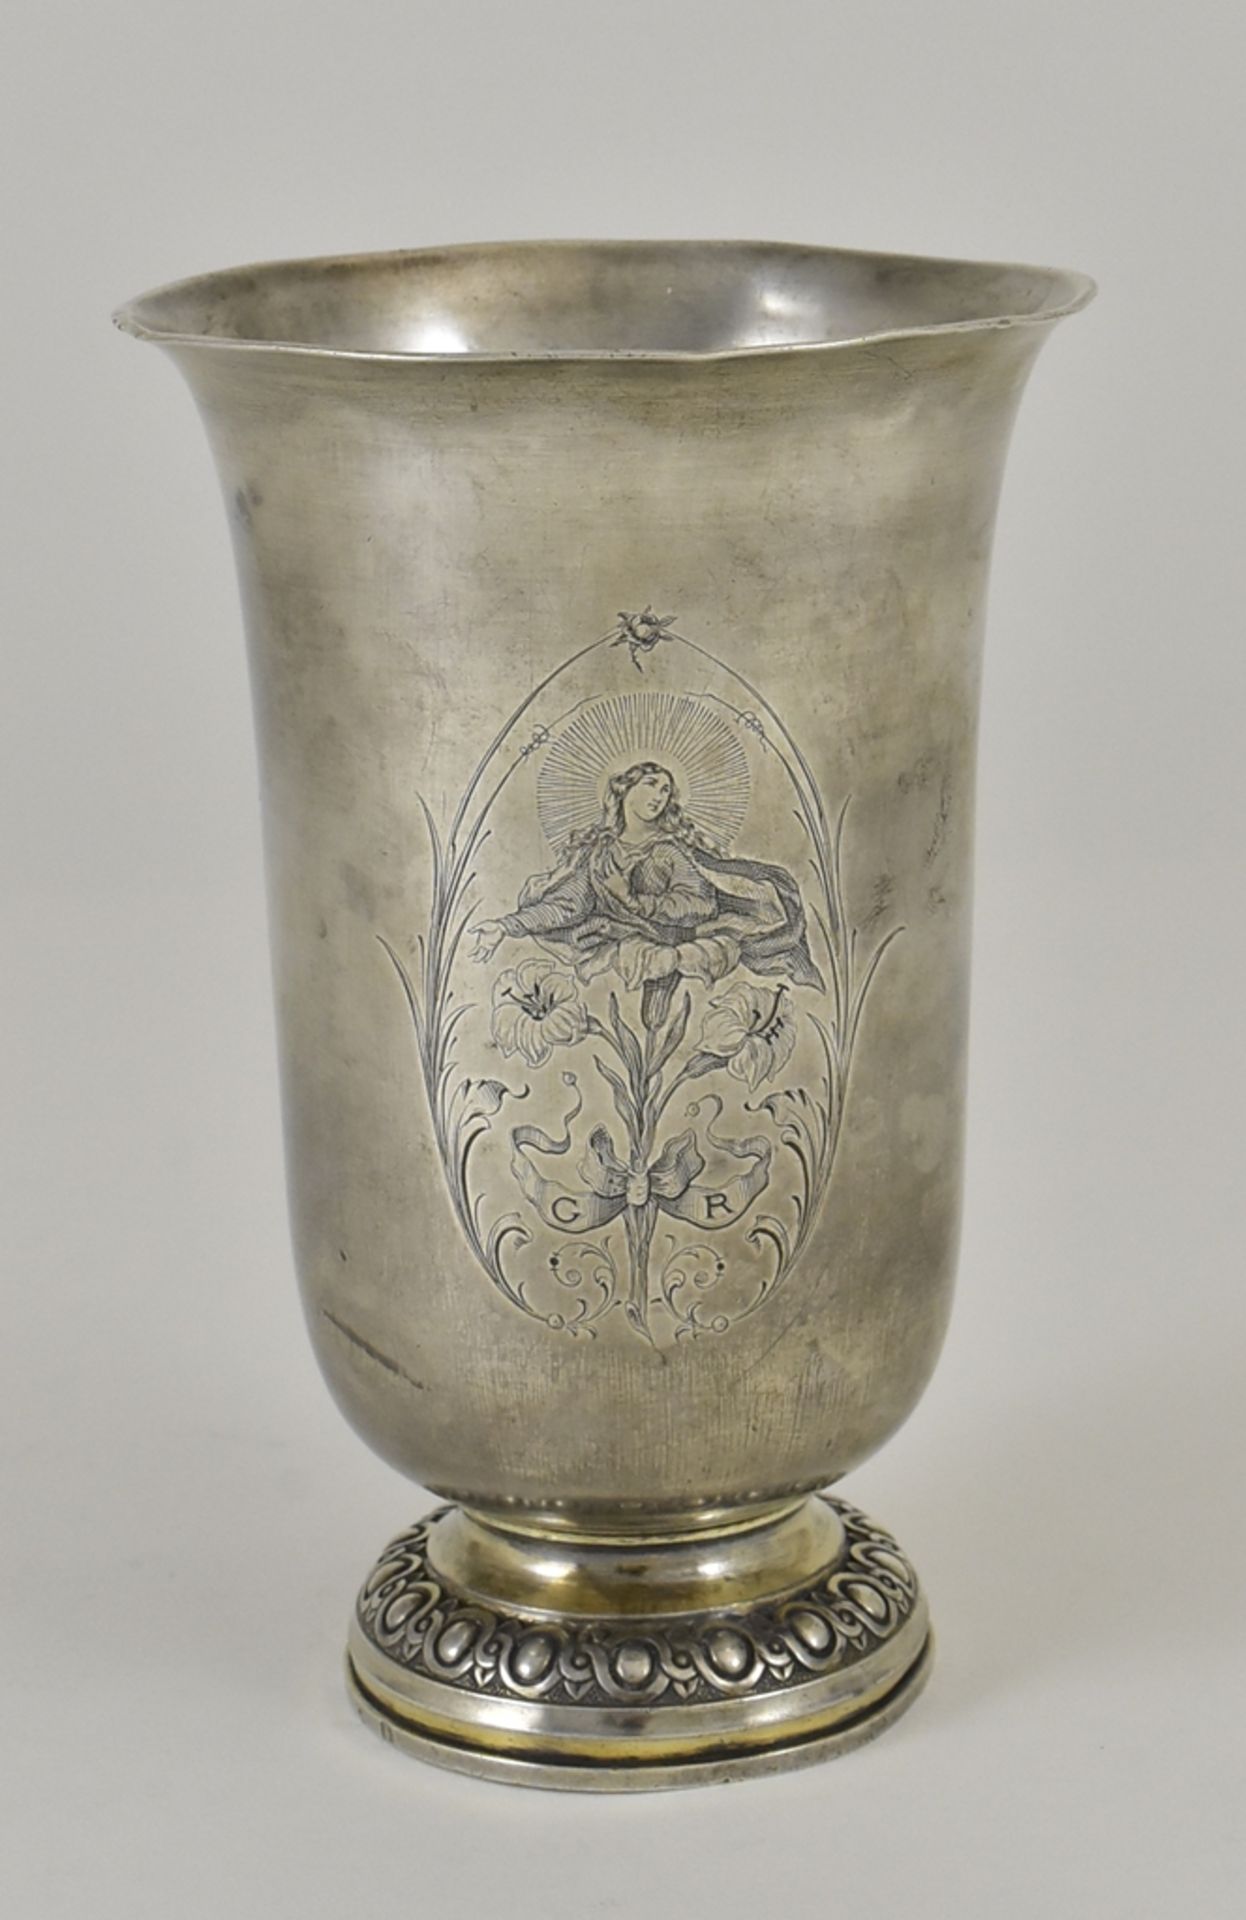 Schwerer Fußbecher. Glockenförmige Cuppa mit Gravur. Maria über Lilien. Frankreich 19. Jh. H 14,5 c